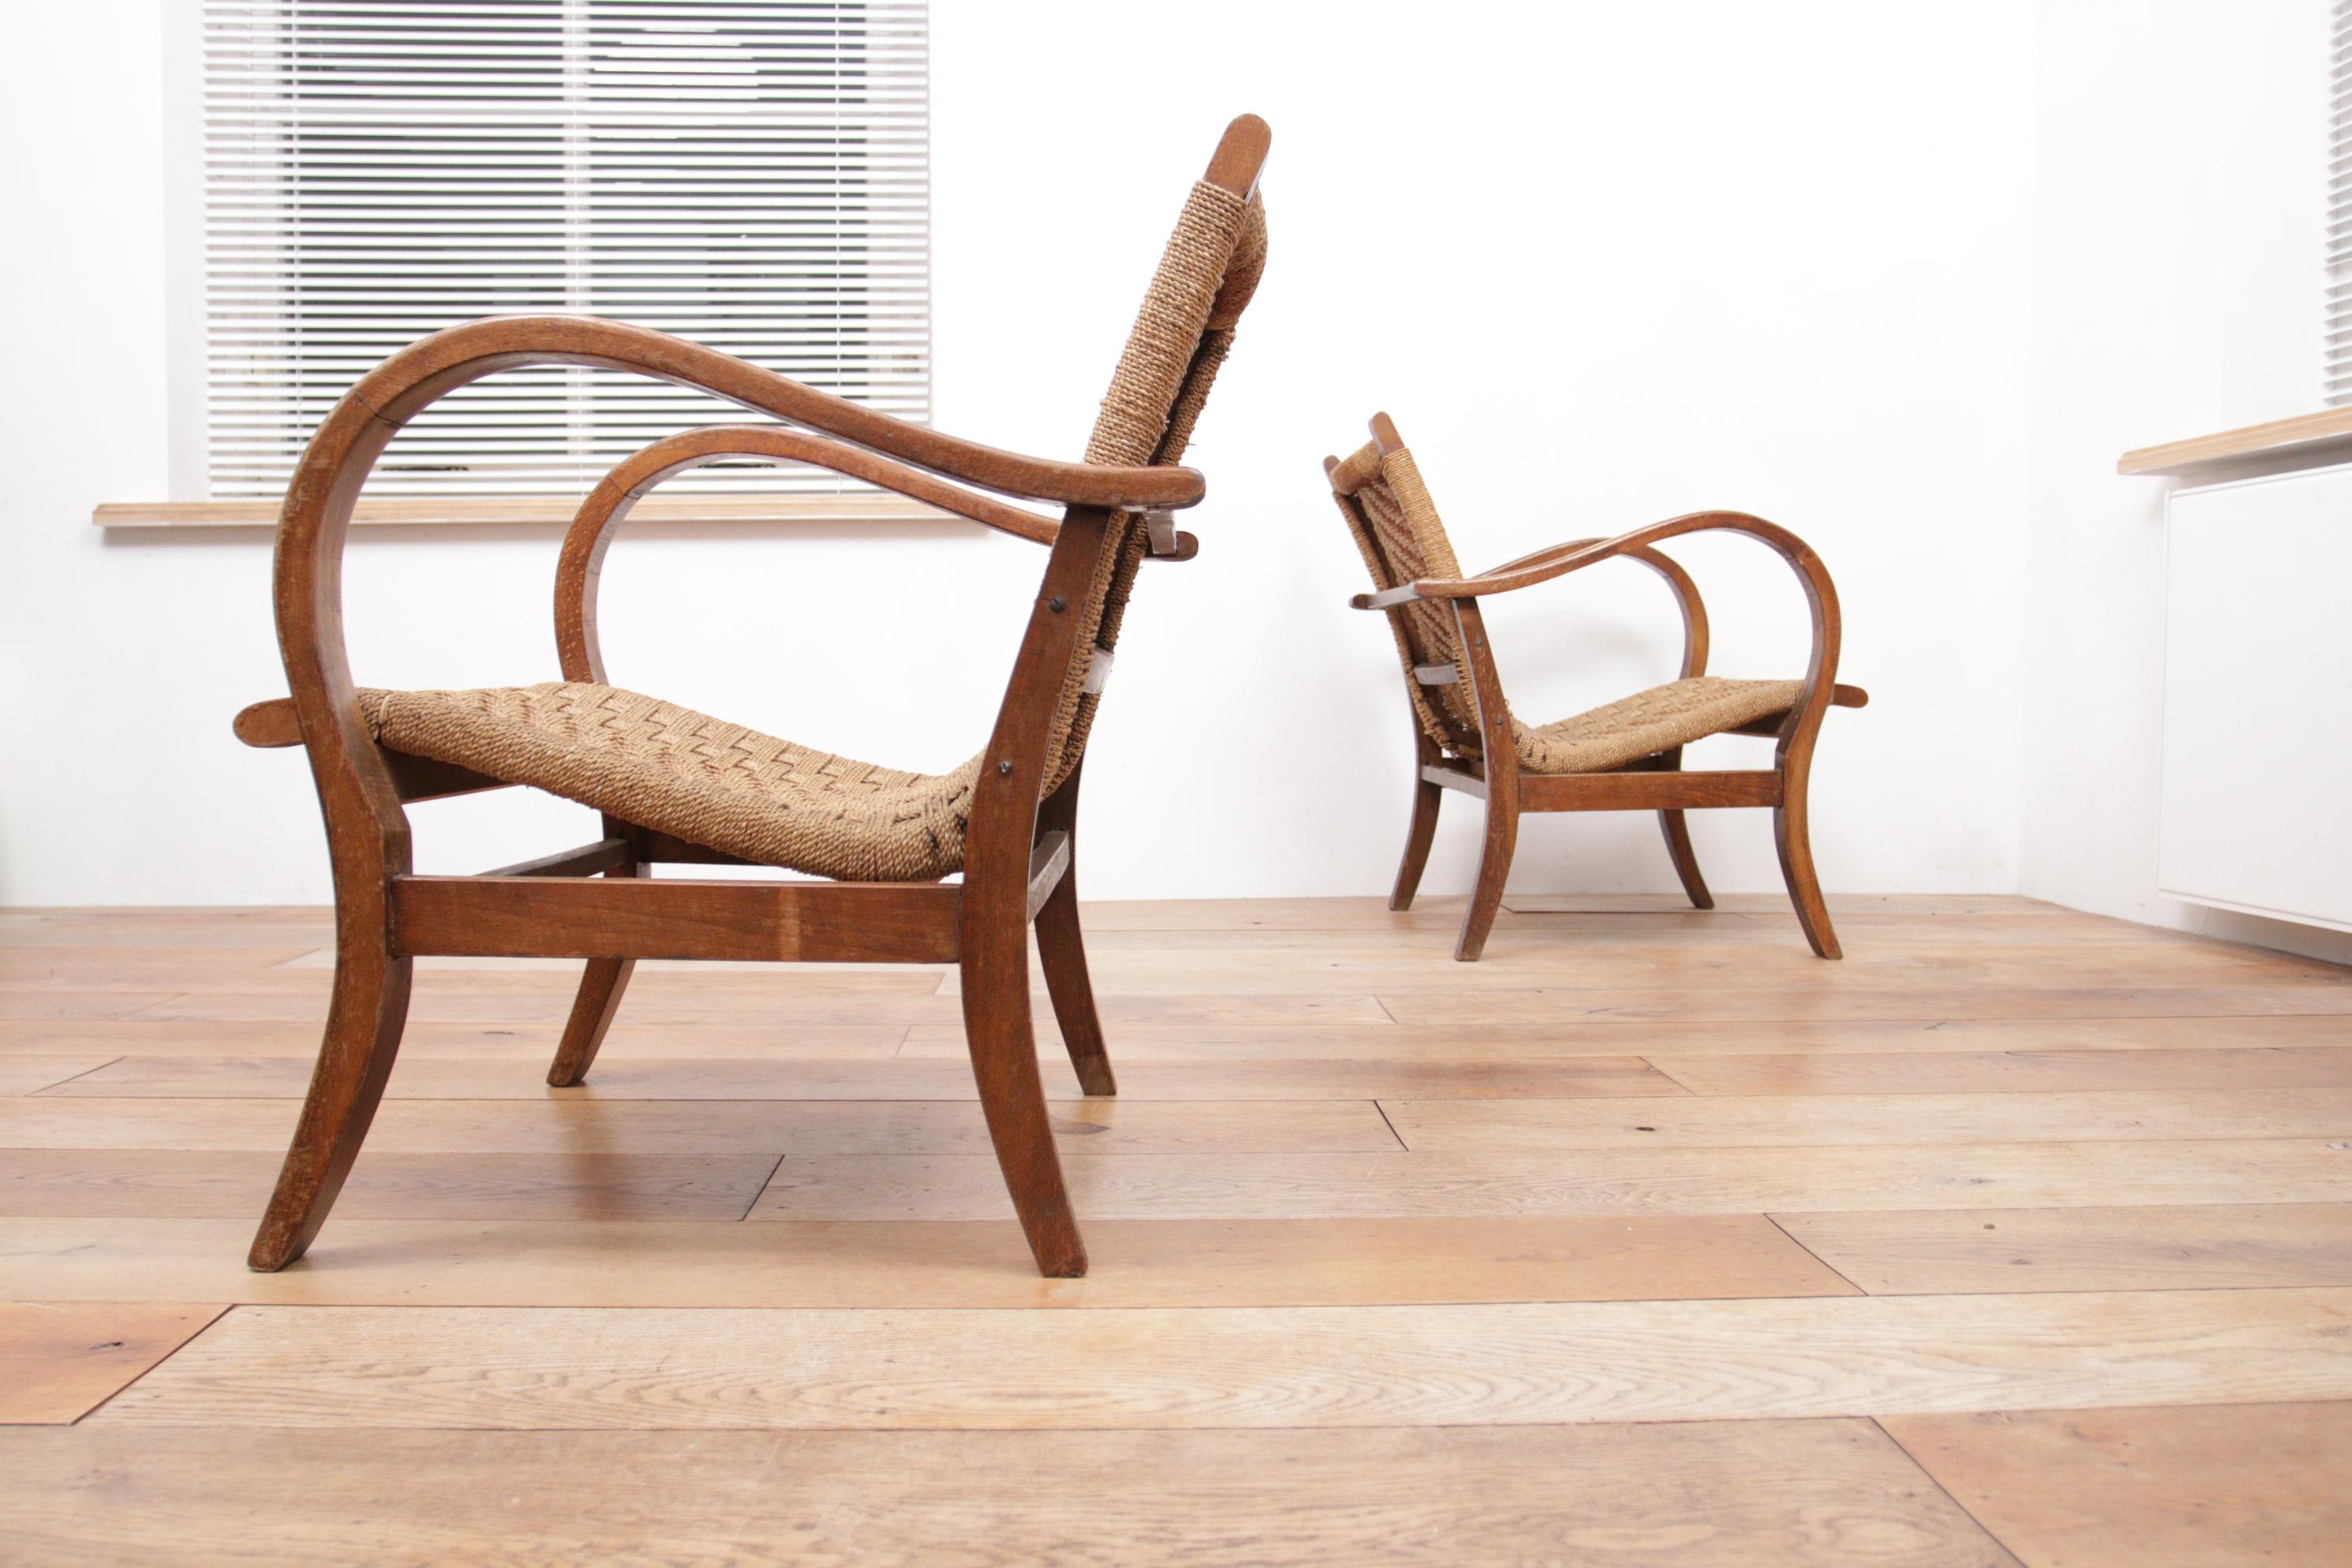 Il s'agit d'un ensemble très rare et original de fauteuils Bauhaus par Erich Dieckmann.

Erich Dieckmann était l'un des plus importants designers de meubles du Bauhaus, développant des gammes de types de meubles de siège. Comme Marcel Breuer, Erich